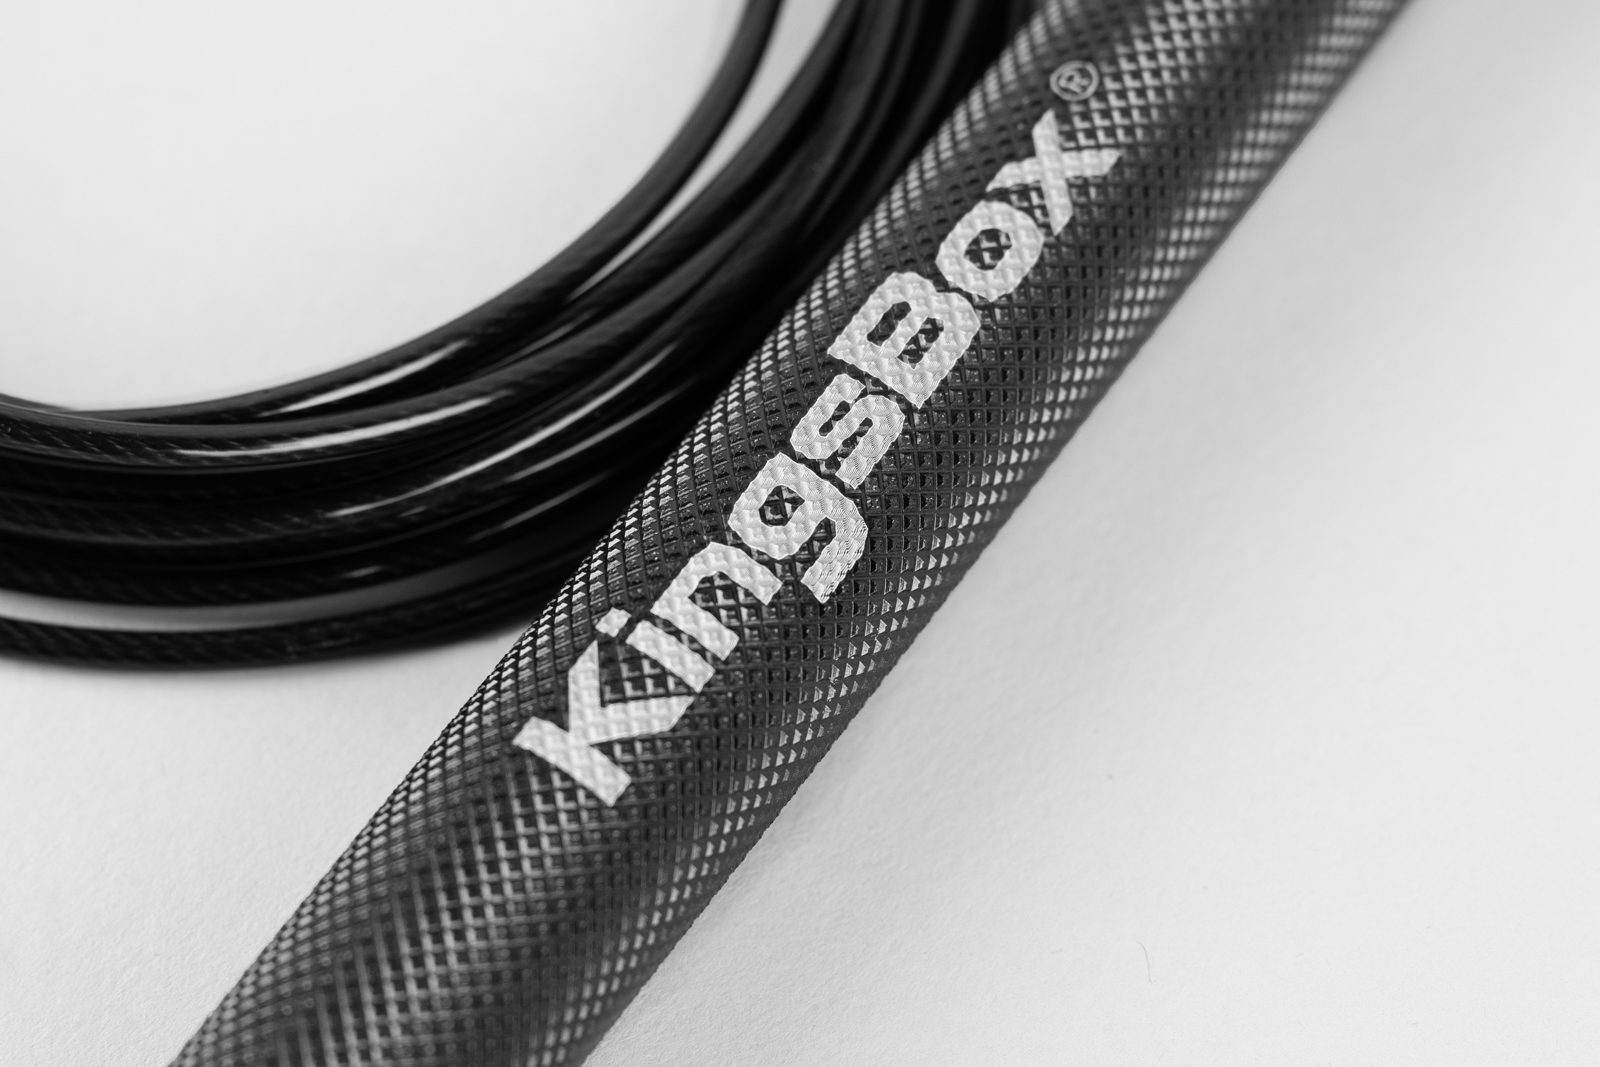 Longueur 300 cm Accessoire de Sport Indispensable Corde à Sauter à Grande Vitesse Tous Types dEntraînement KingsBox Precision Speed Rope